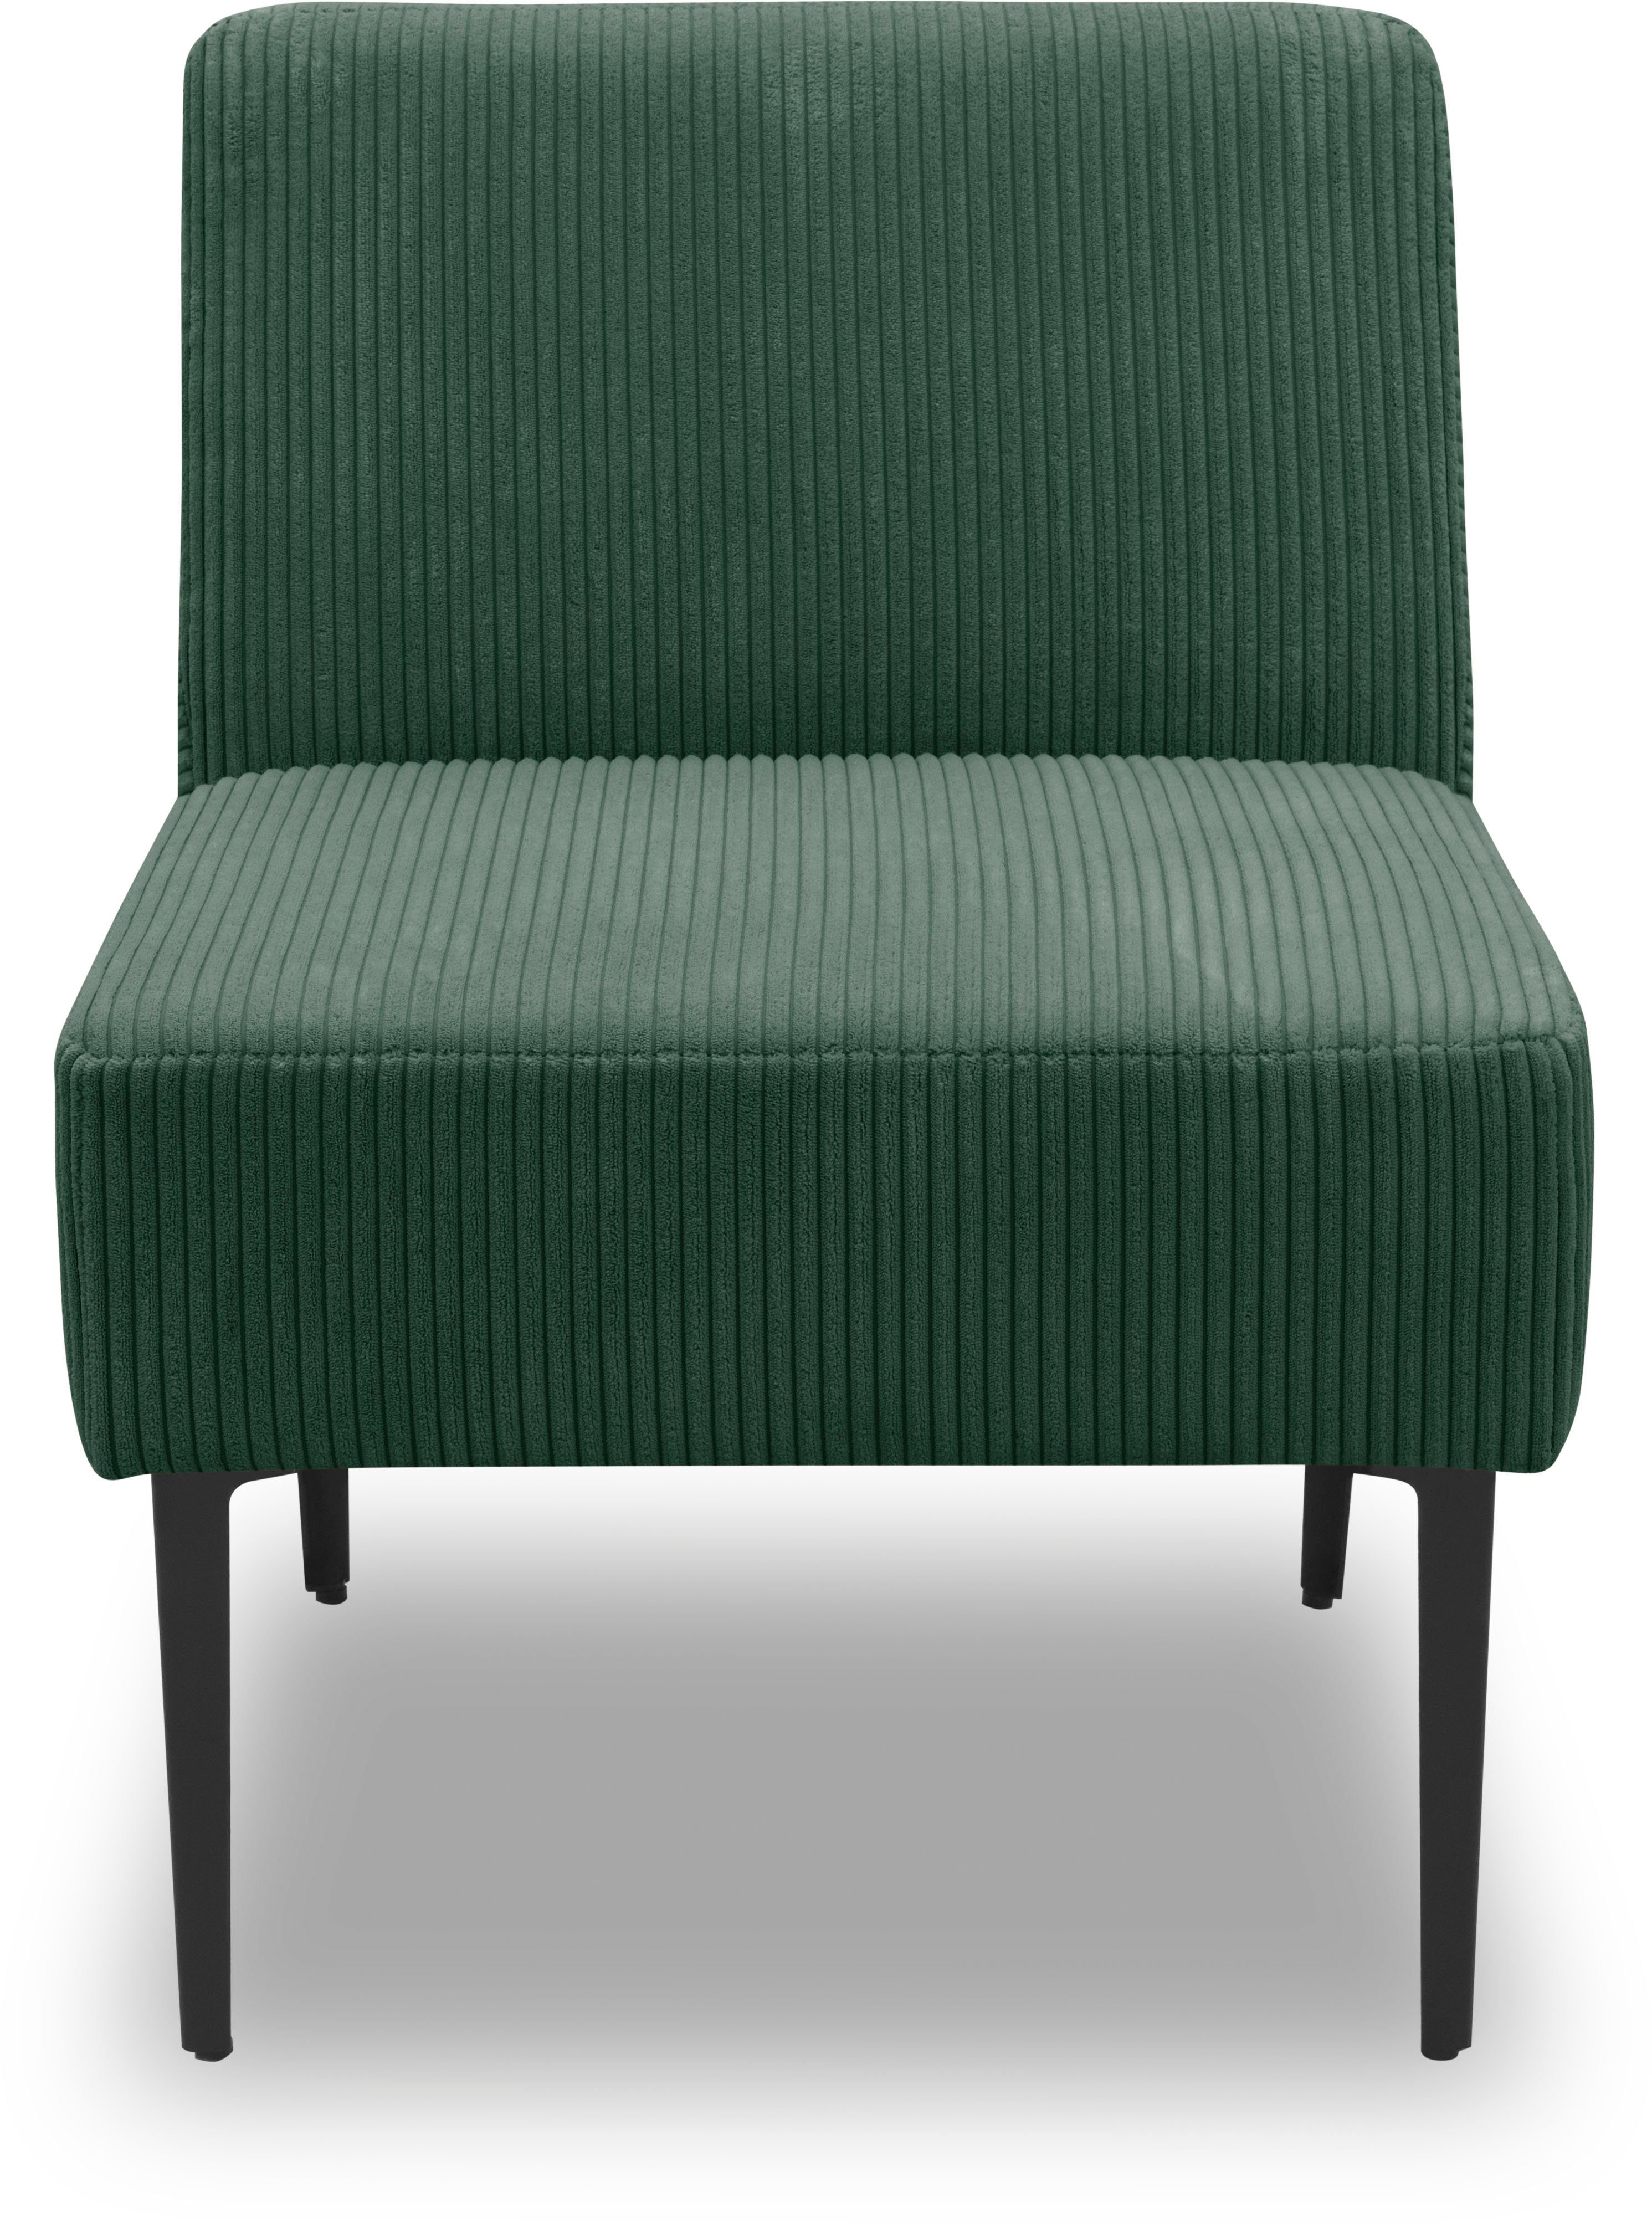 DOMO collection Sessel 700010, für individuelle Zusammenstellung eines persönlichen Sofas dünkelgrün | Einzelsessel